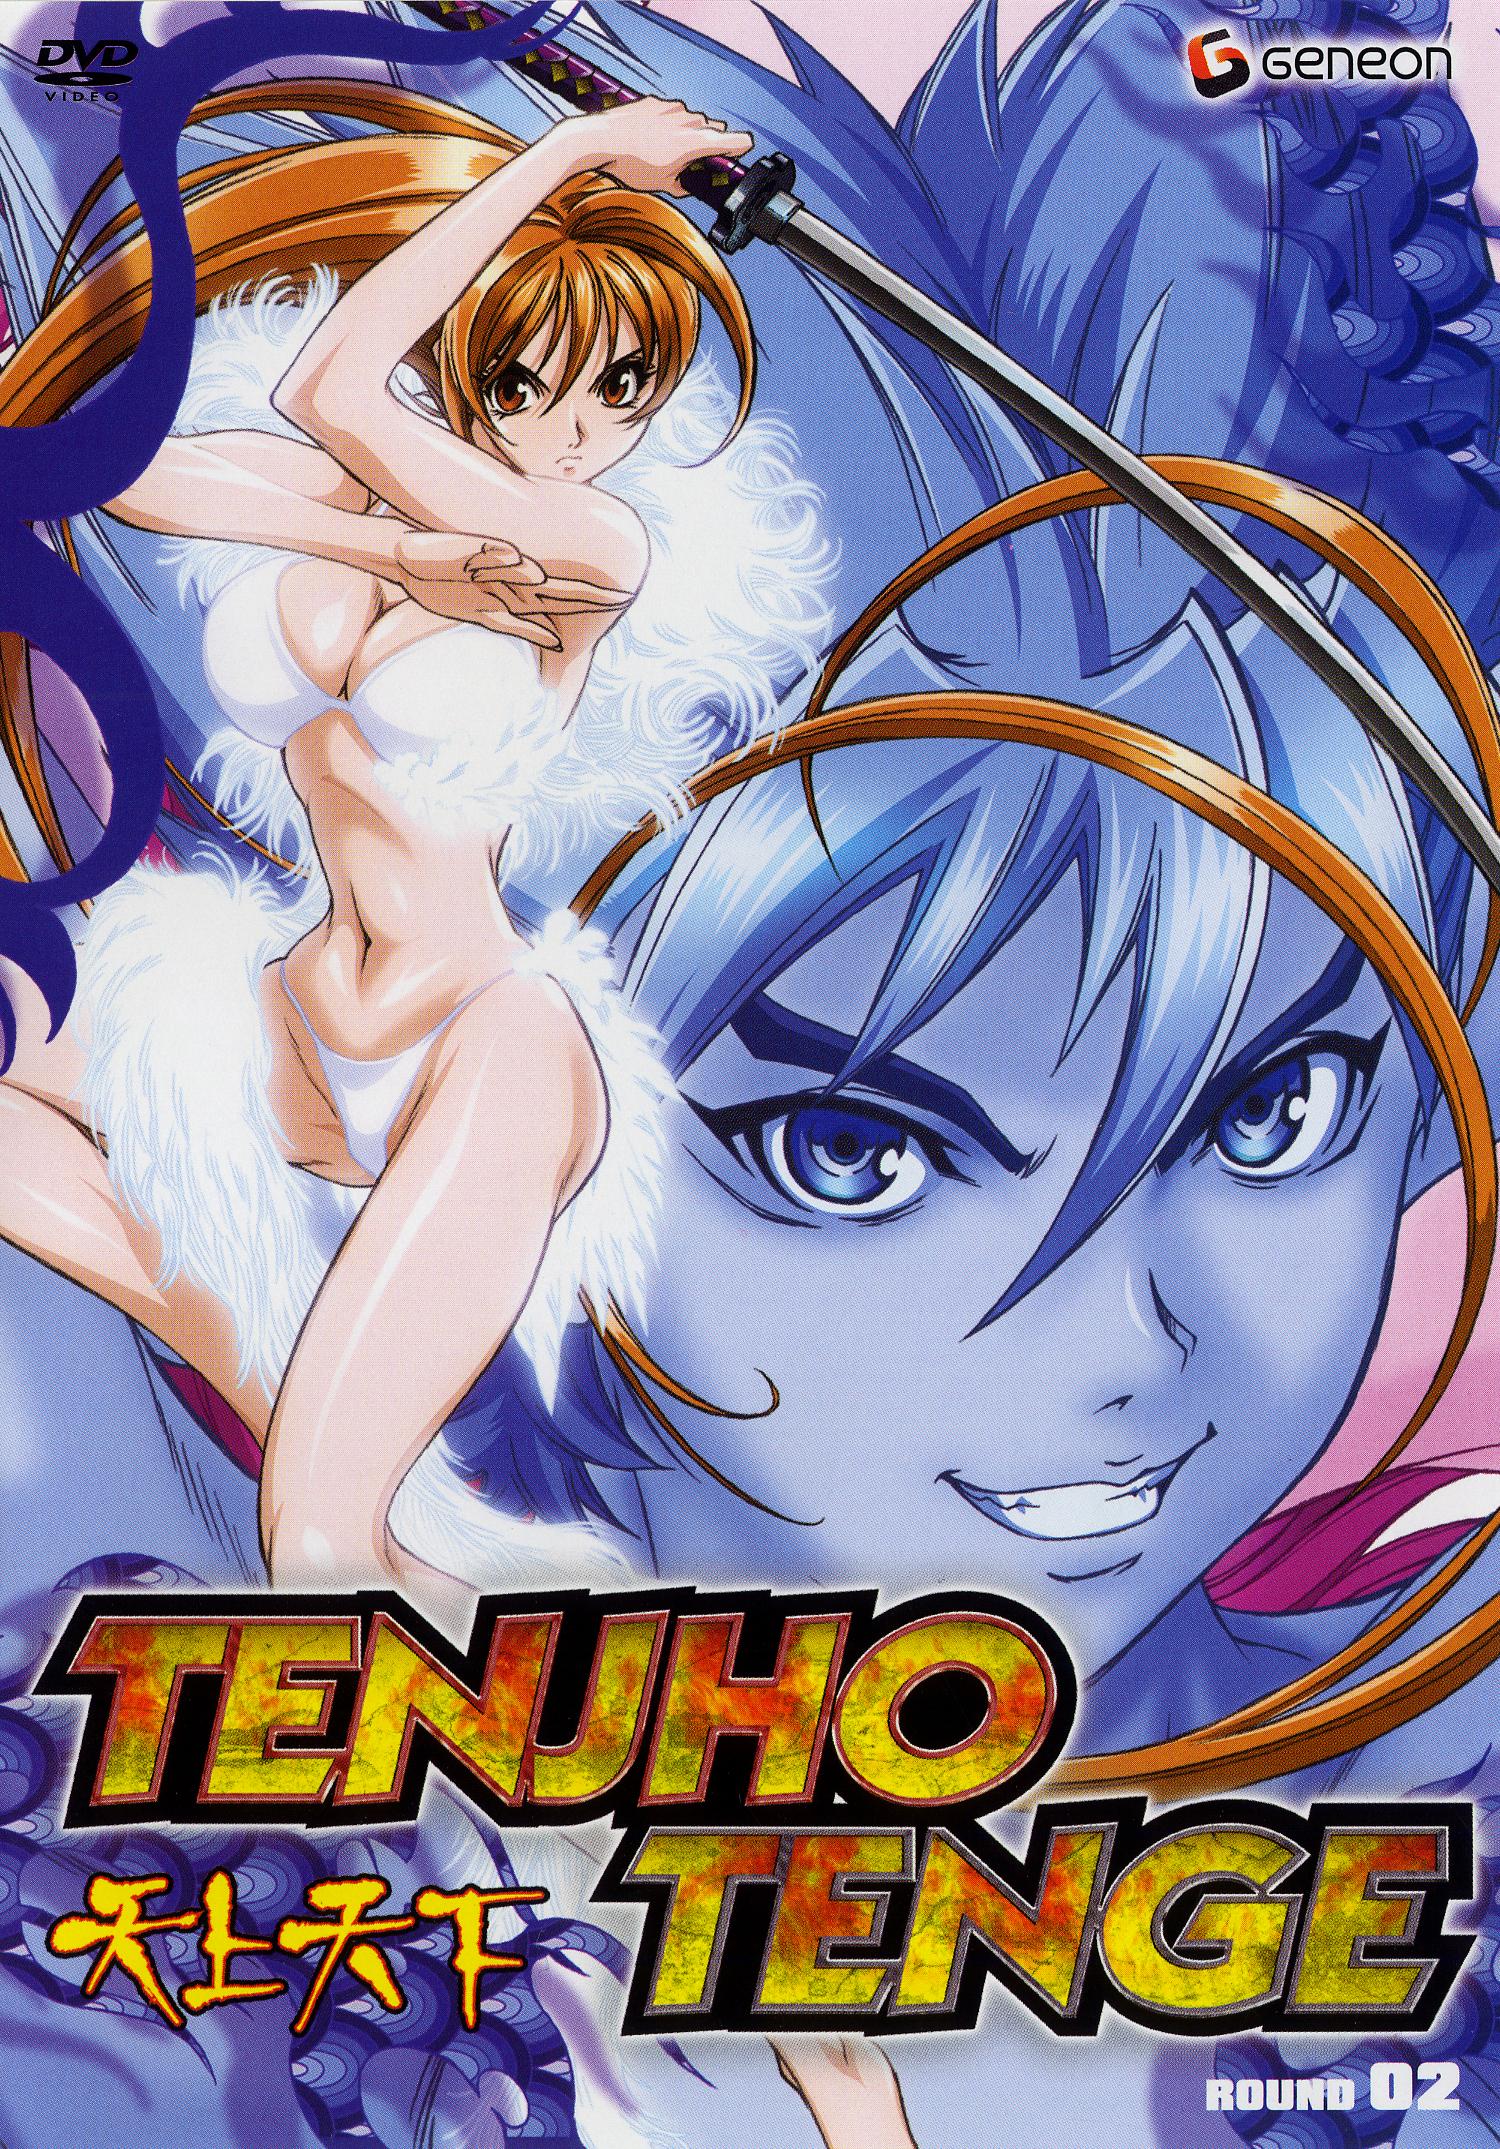 Tenjho Tenge - DVD PLANET STORE